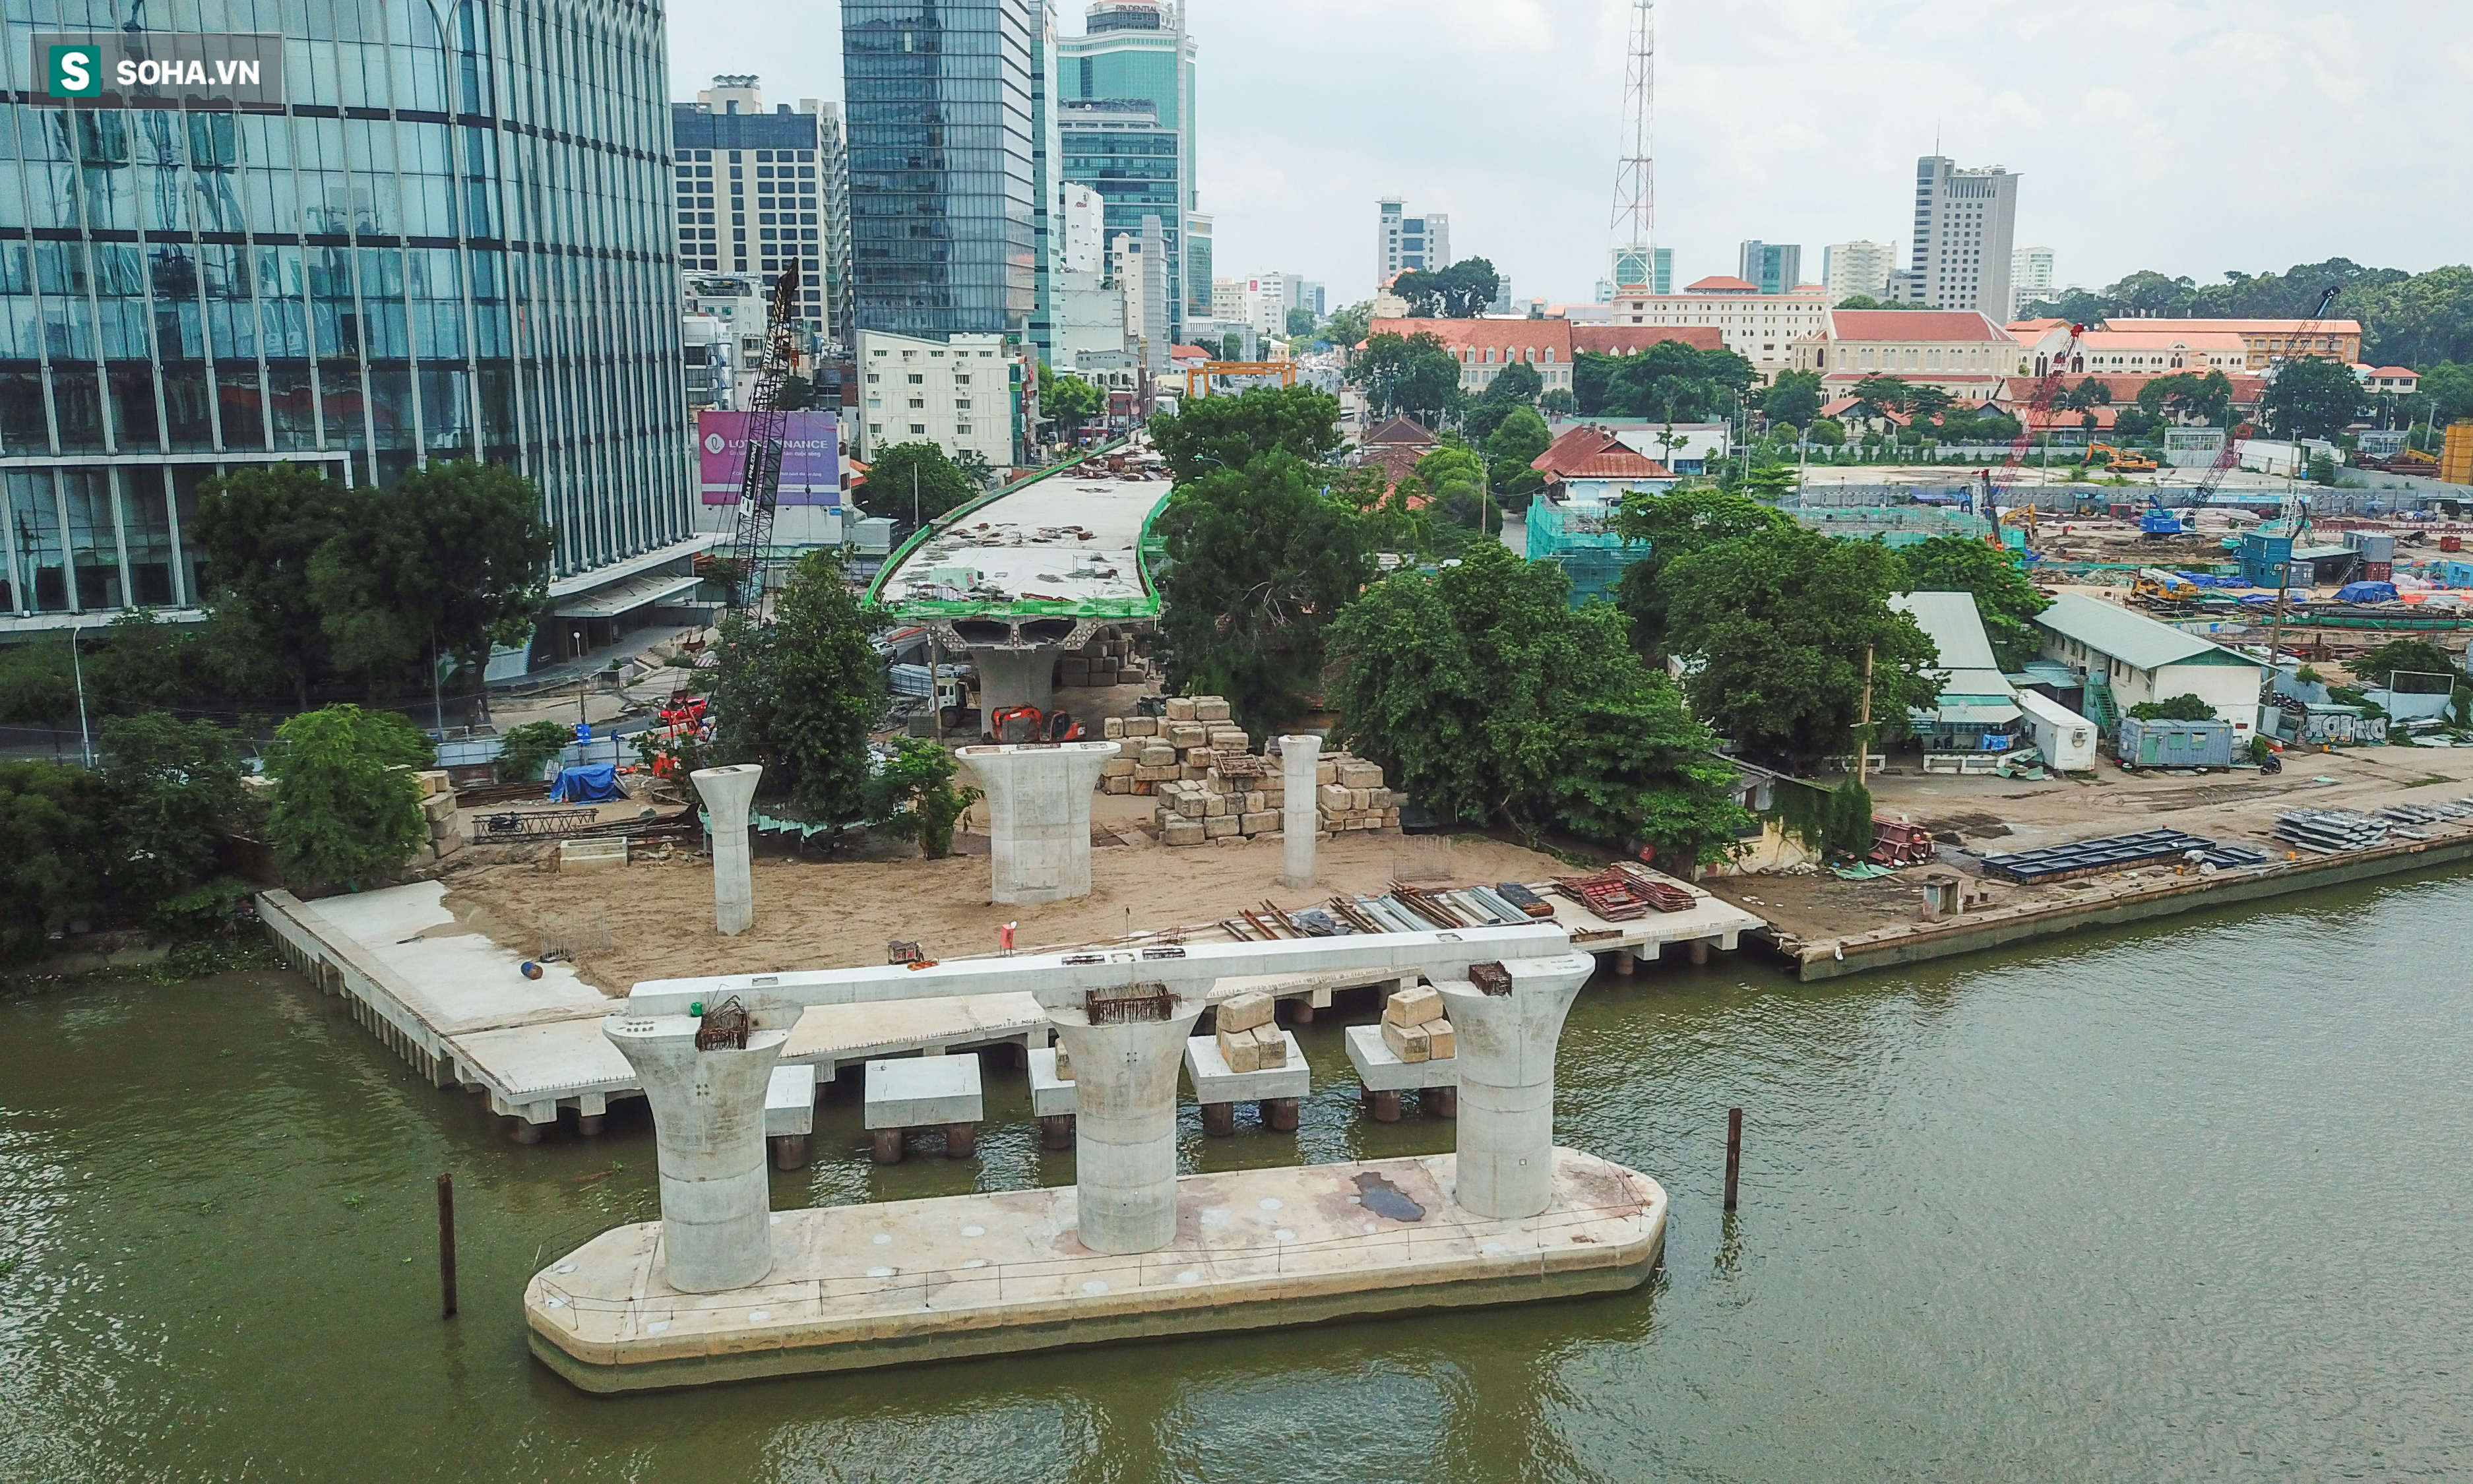 Cầu Thủ Thiêm 2 vươn mình ra sông Sài Gòn, lộ hình dáng khi nhìn từ trên cao - Ảnh 9.